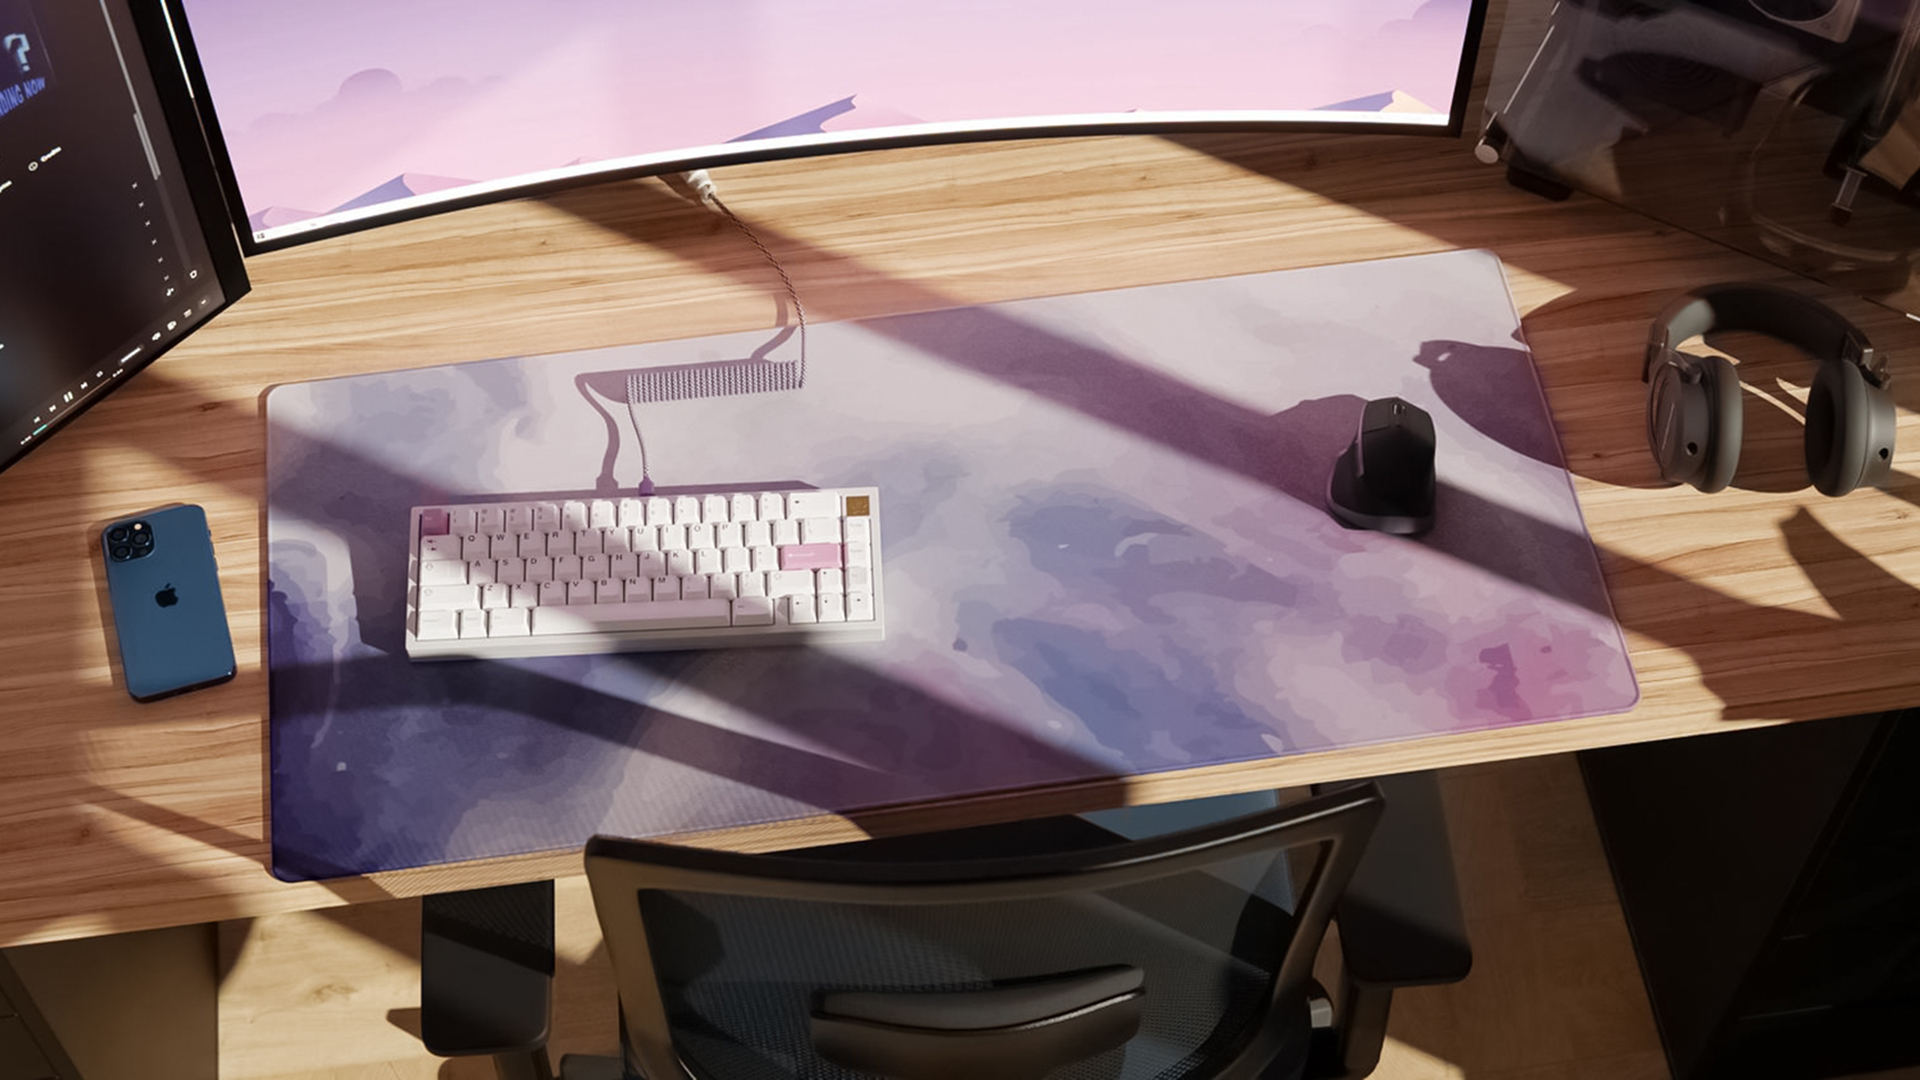 静物机械键盘图片桌面壁纸